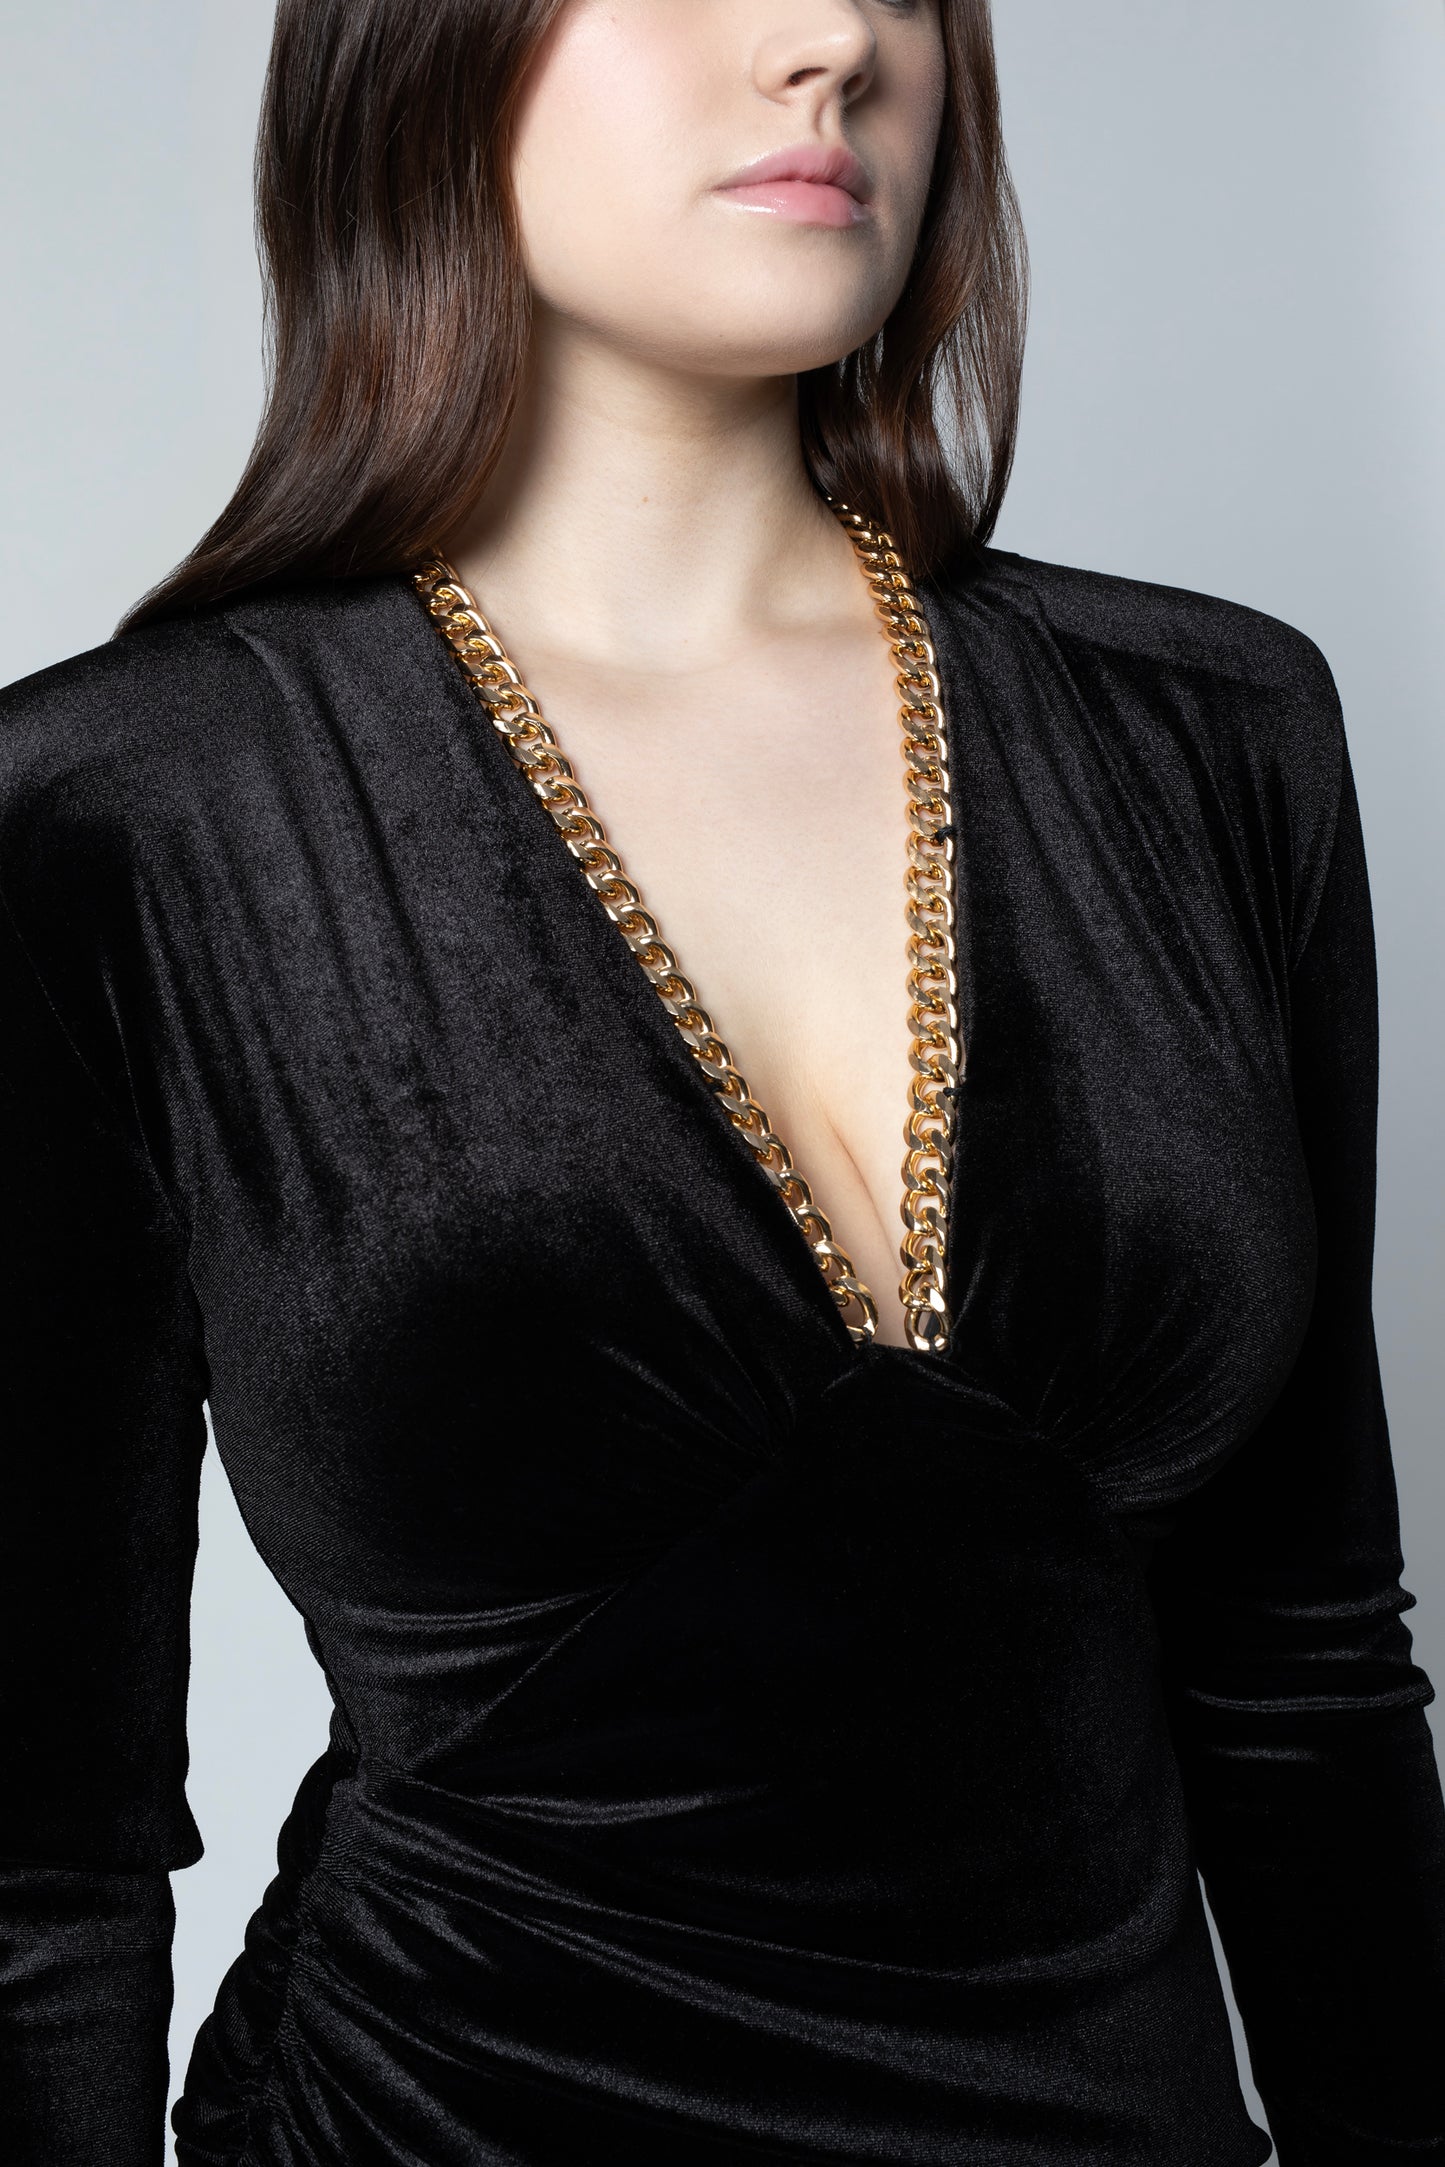 Black velvet chain dress